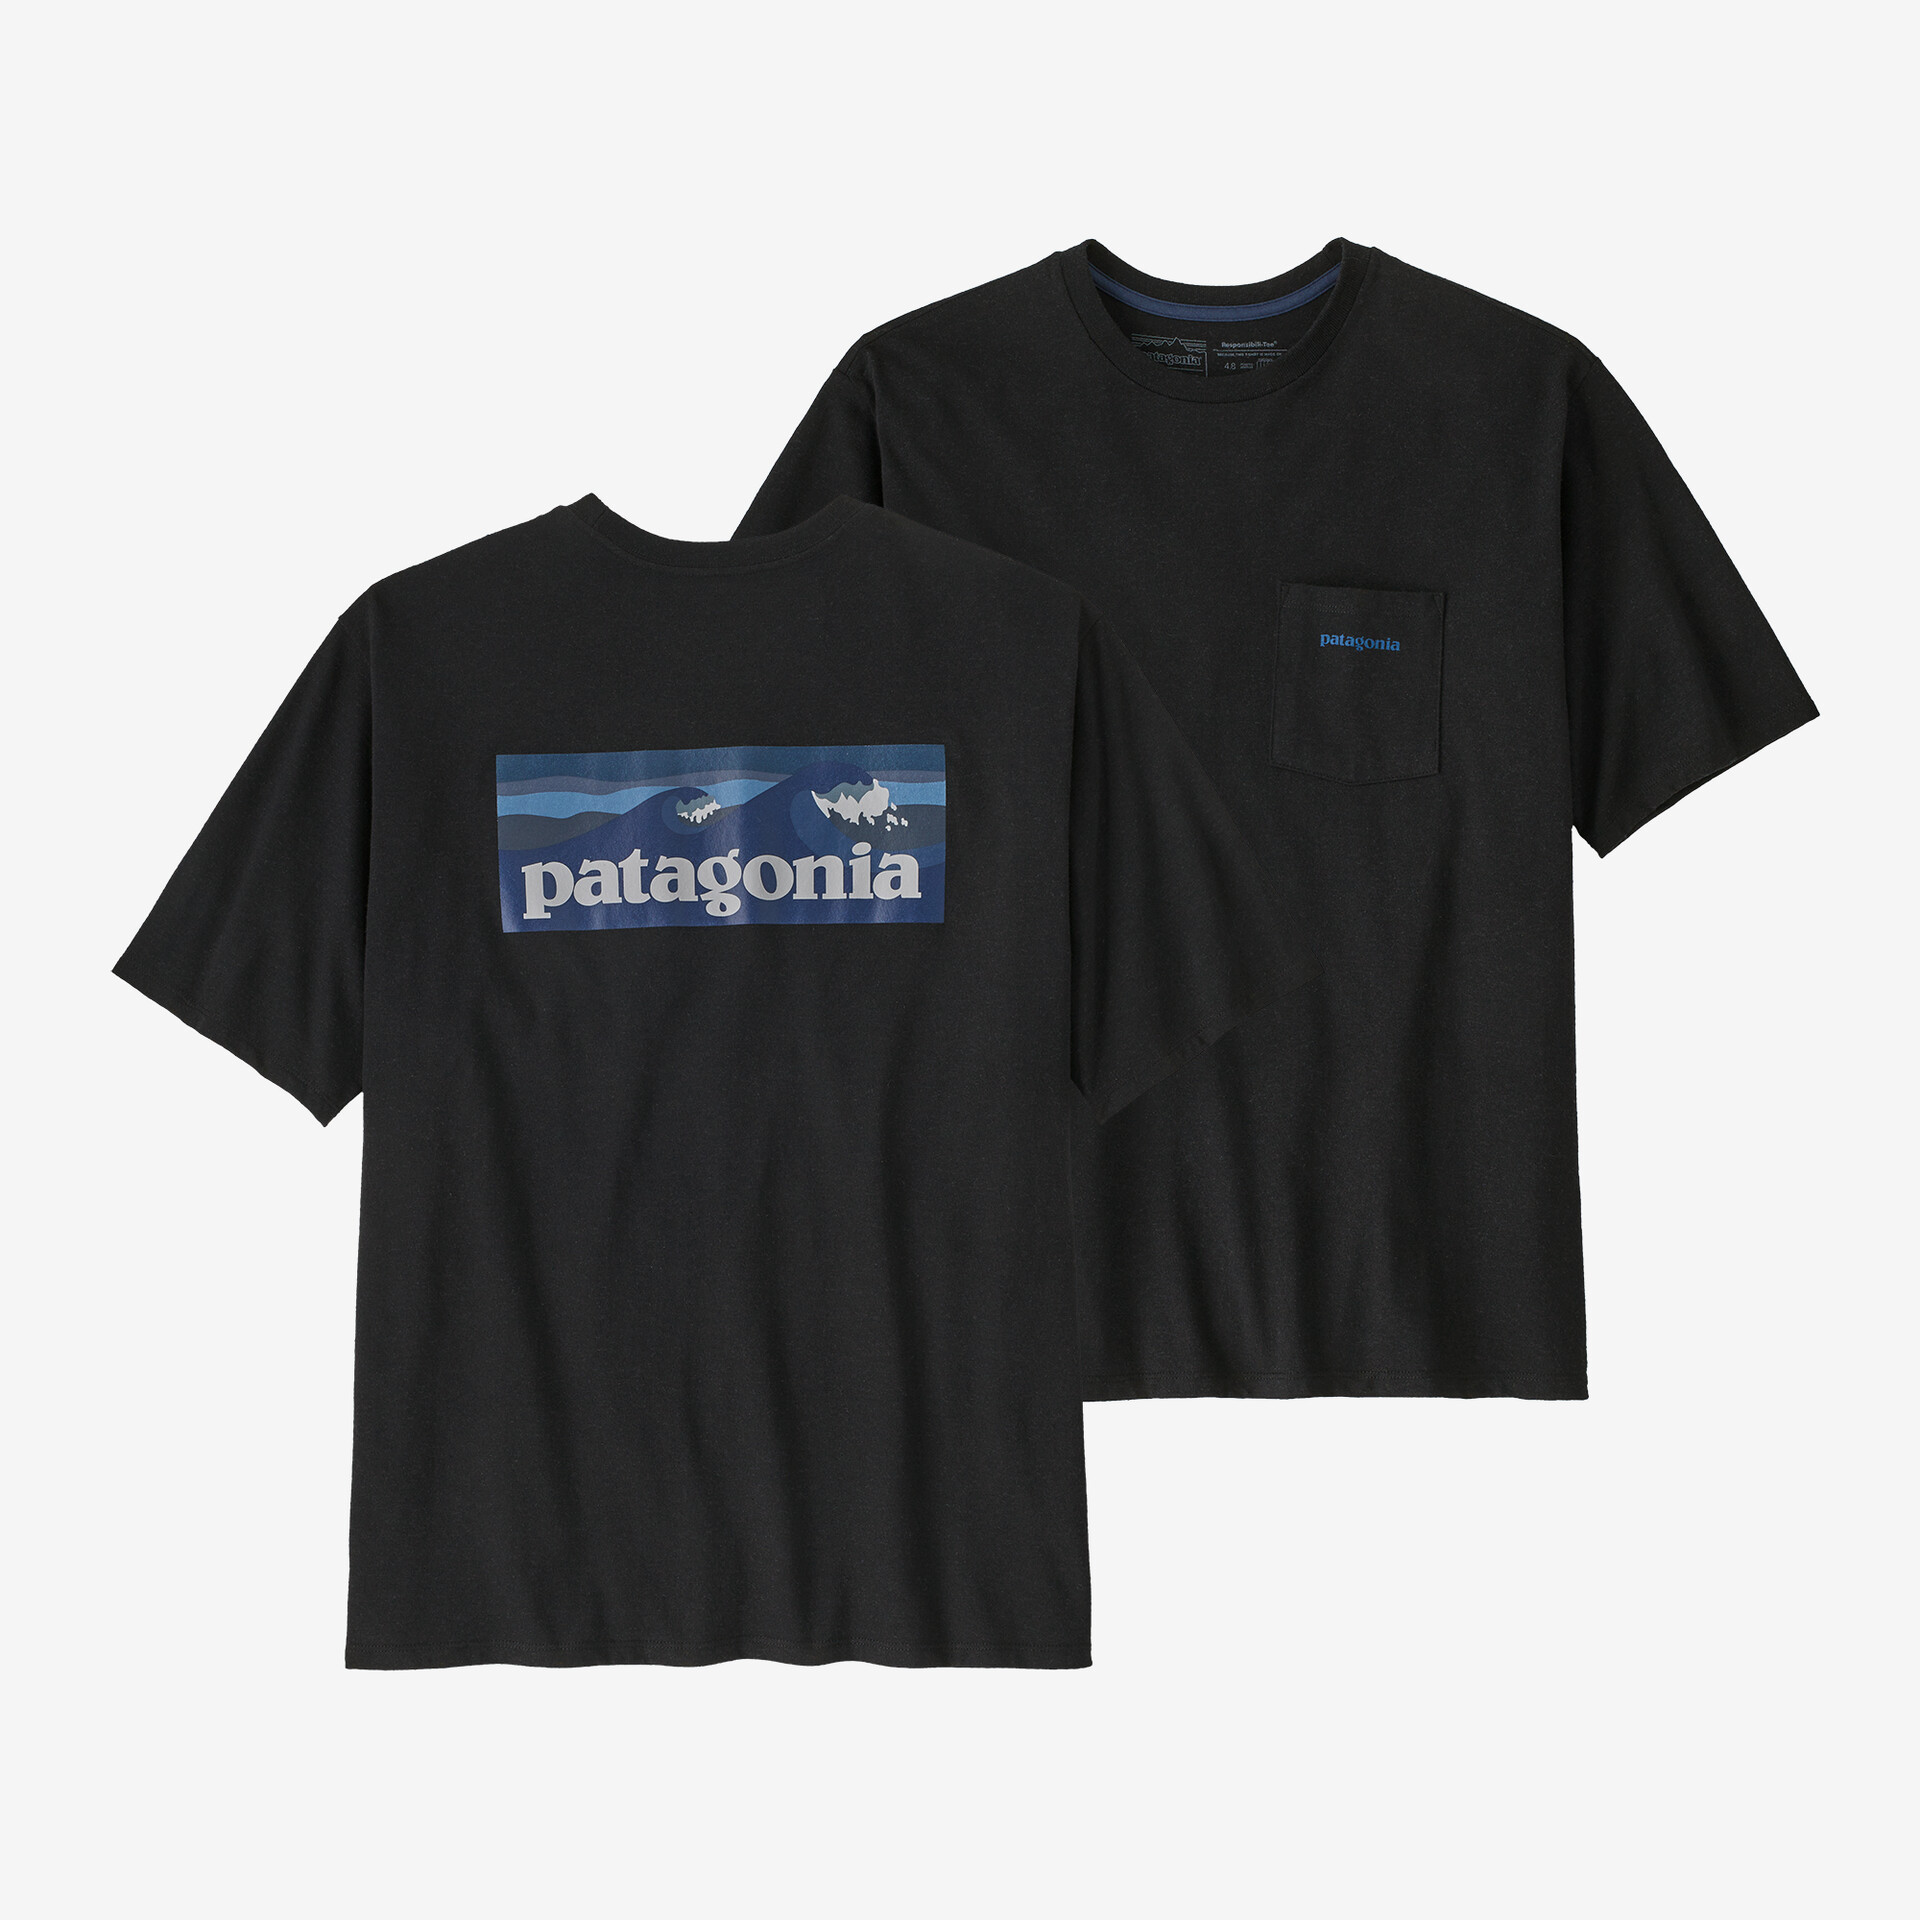 Мужская футболка с логотипом и карманом Responsibili Patagonia, черный мужская ответственная футболка с логотипом и карманом patagonia серый